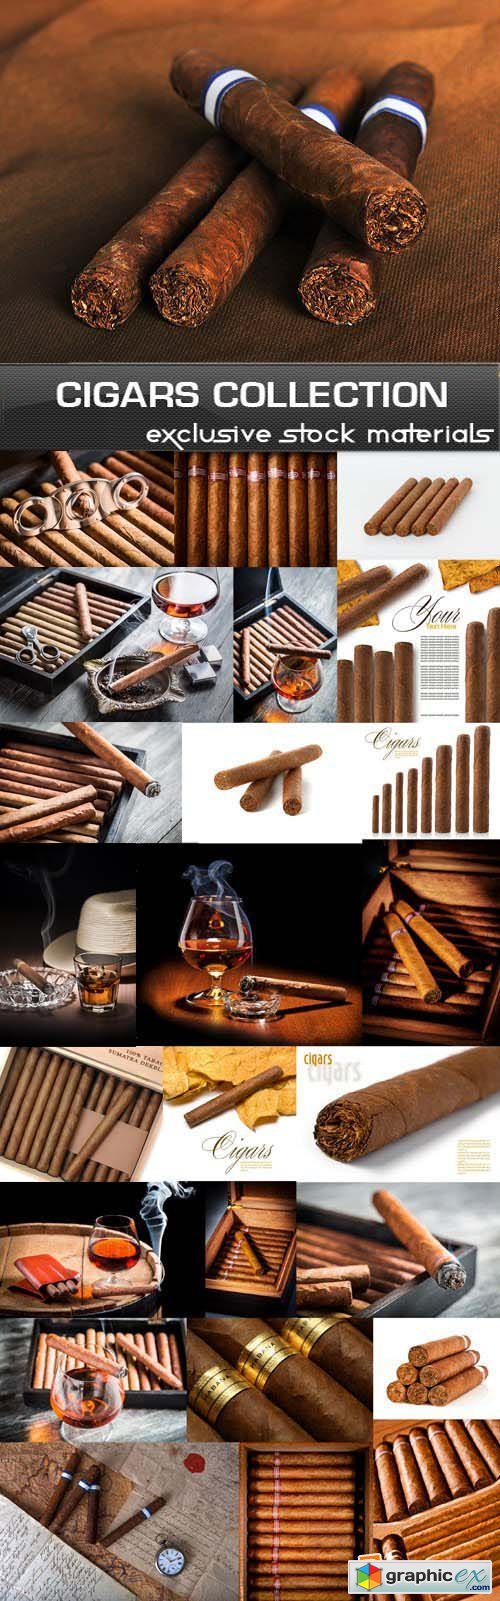 Cigars Collection, 25xUHQ JPEG